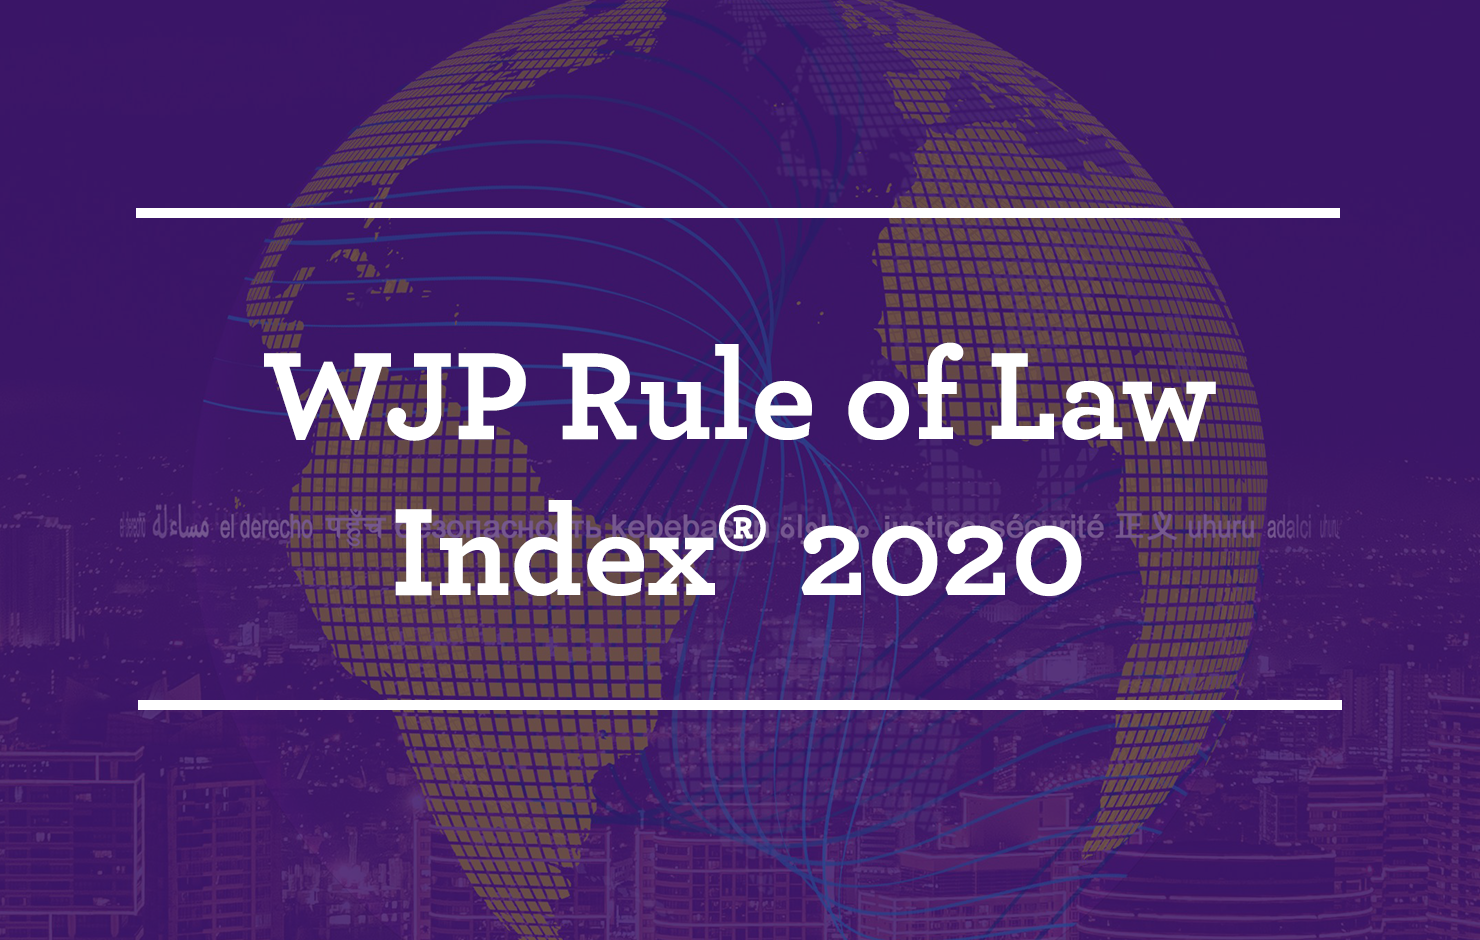 WJP Rule of Law 2019